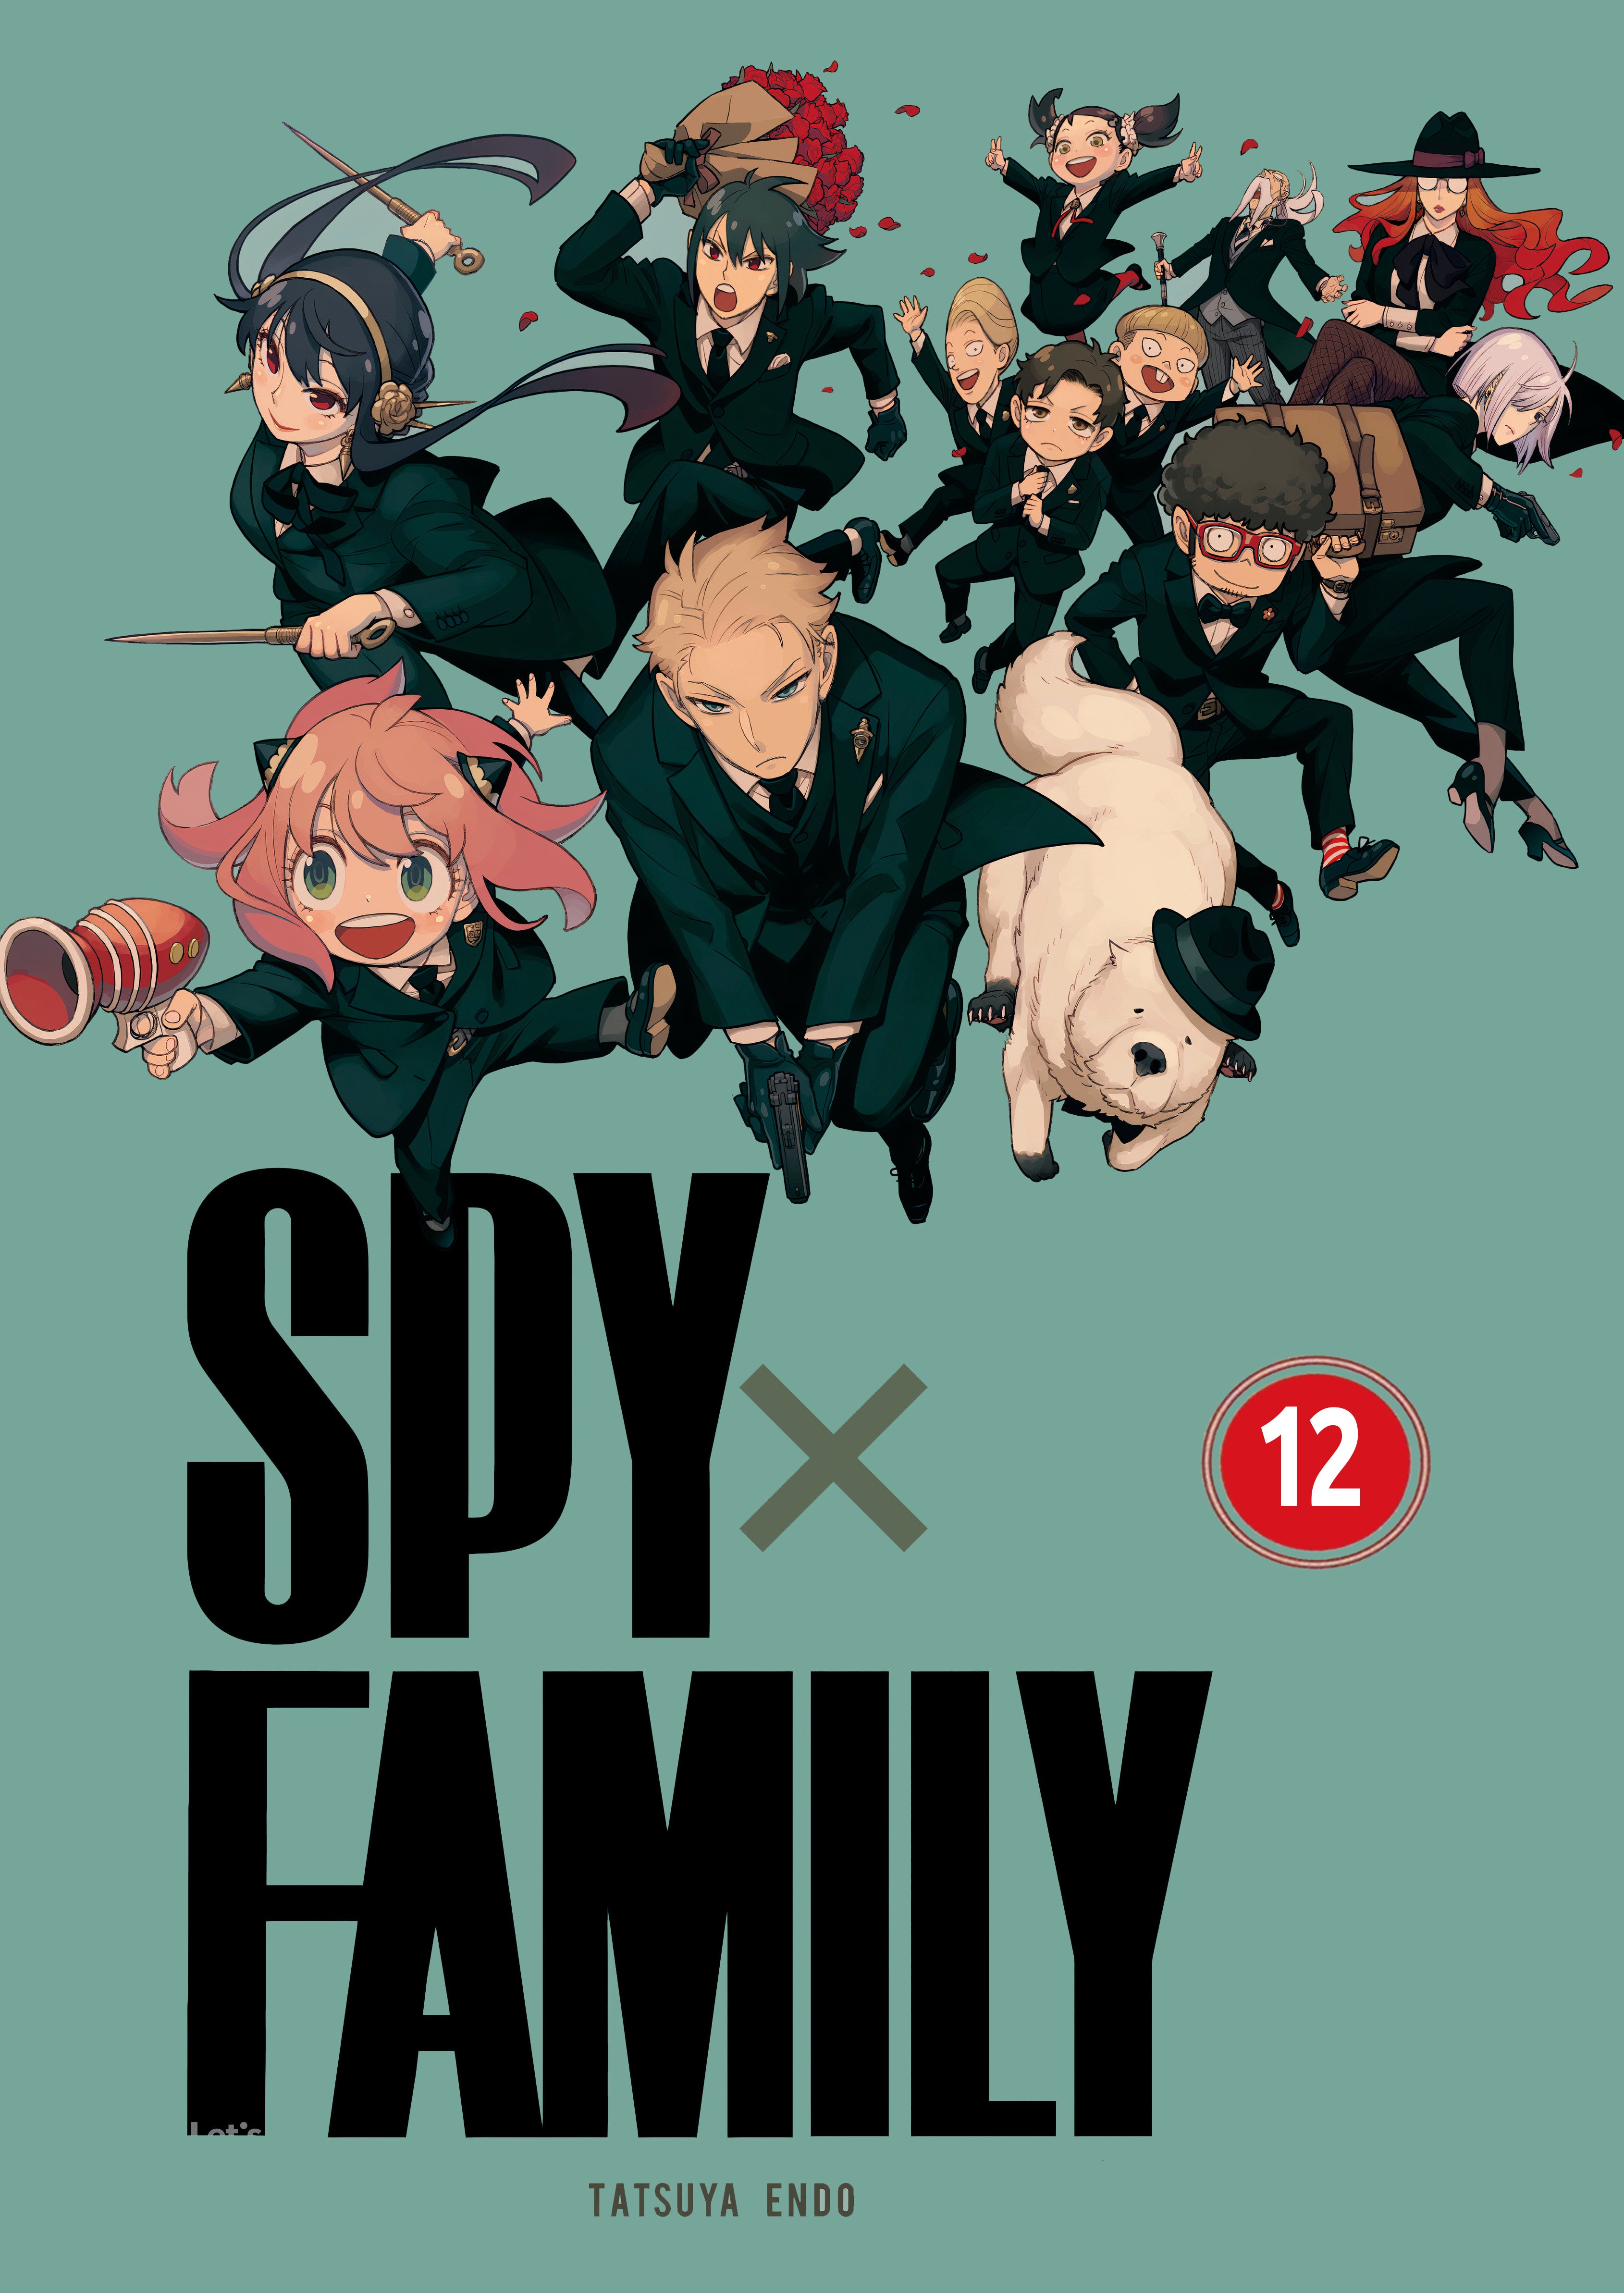 Spy x Family Volume 12 (English Version), Hobbies & Toys, Books